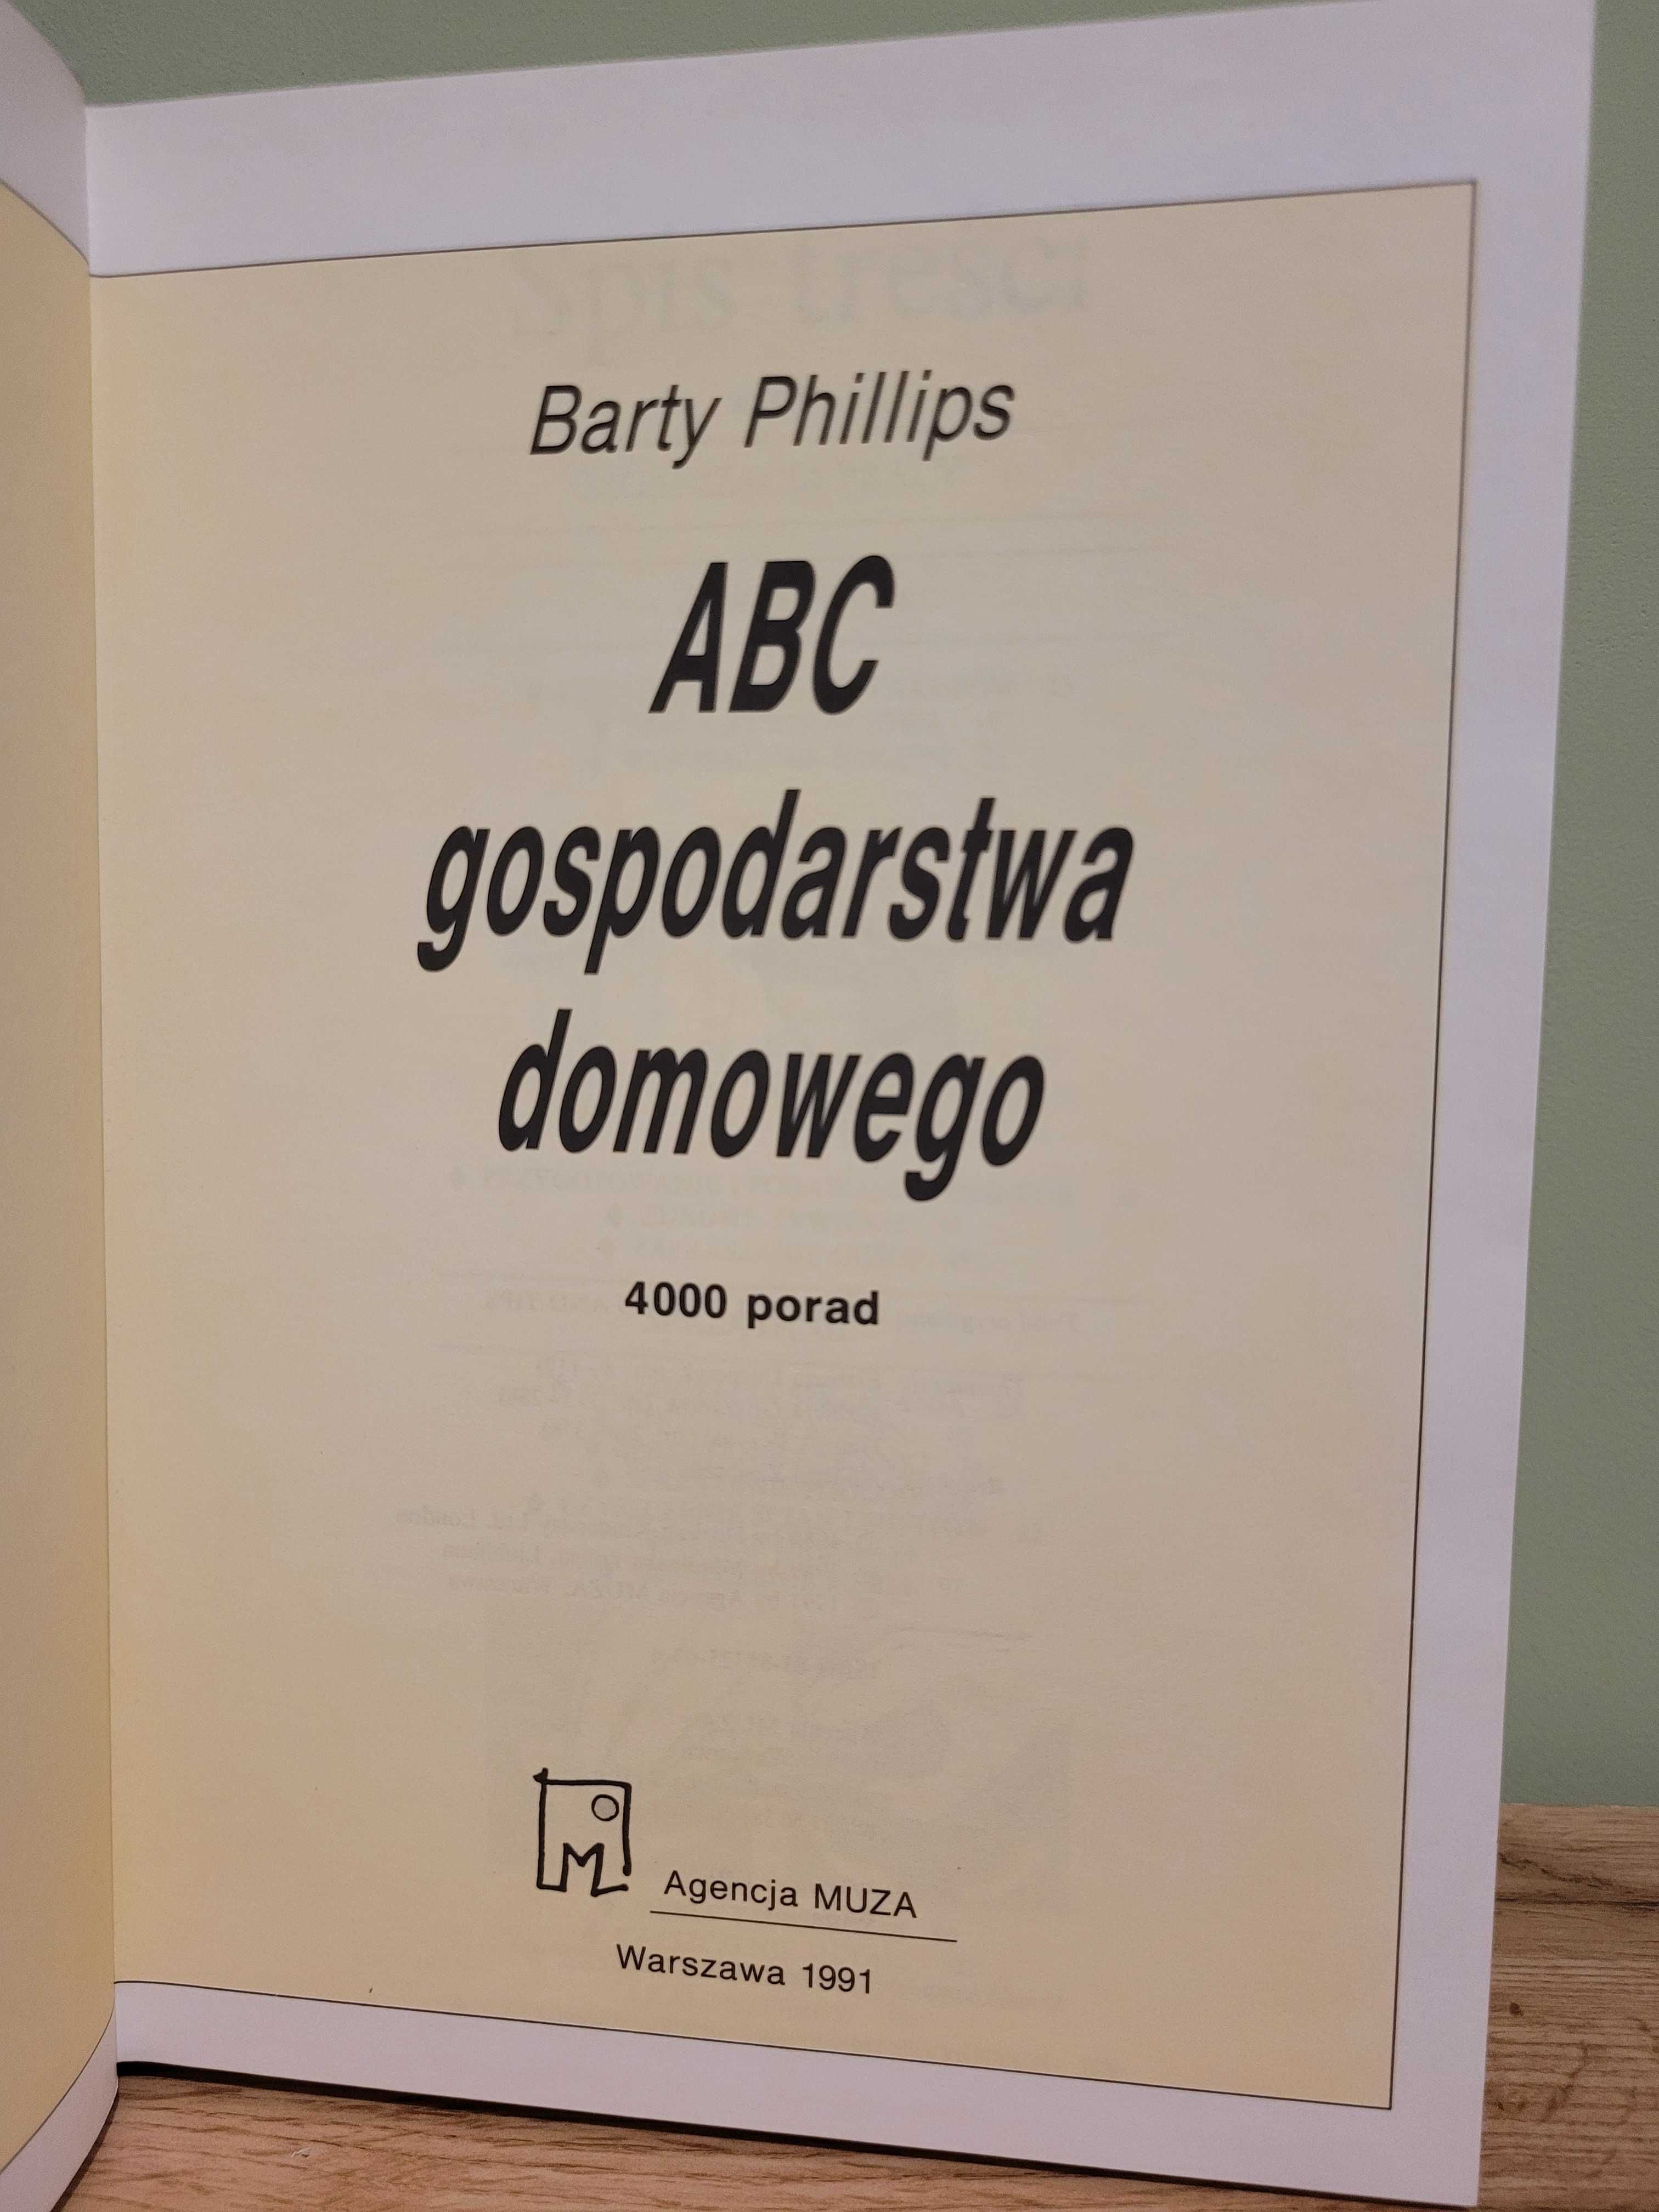 ABC gospodarstwa domowego 4000 porad - Barty Phillips